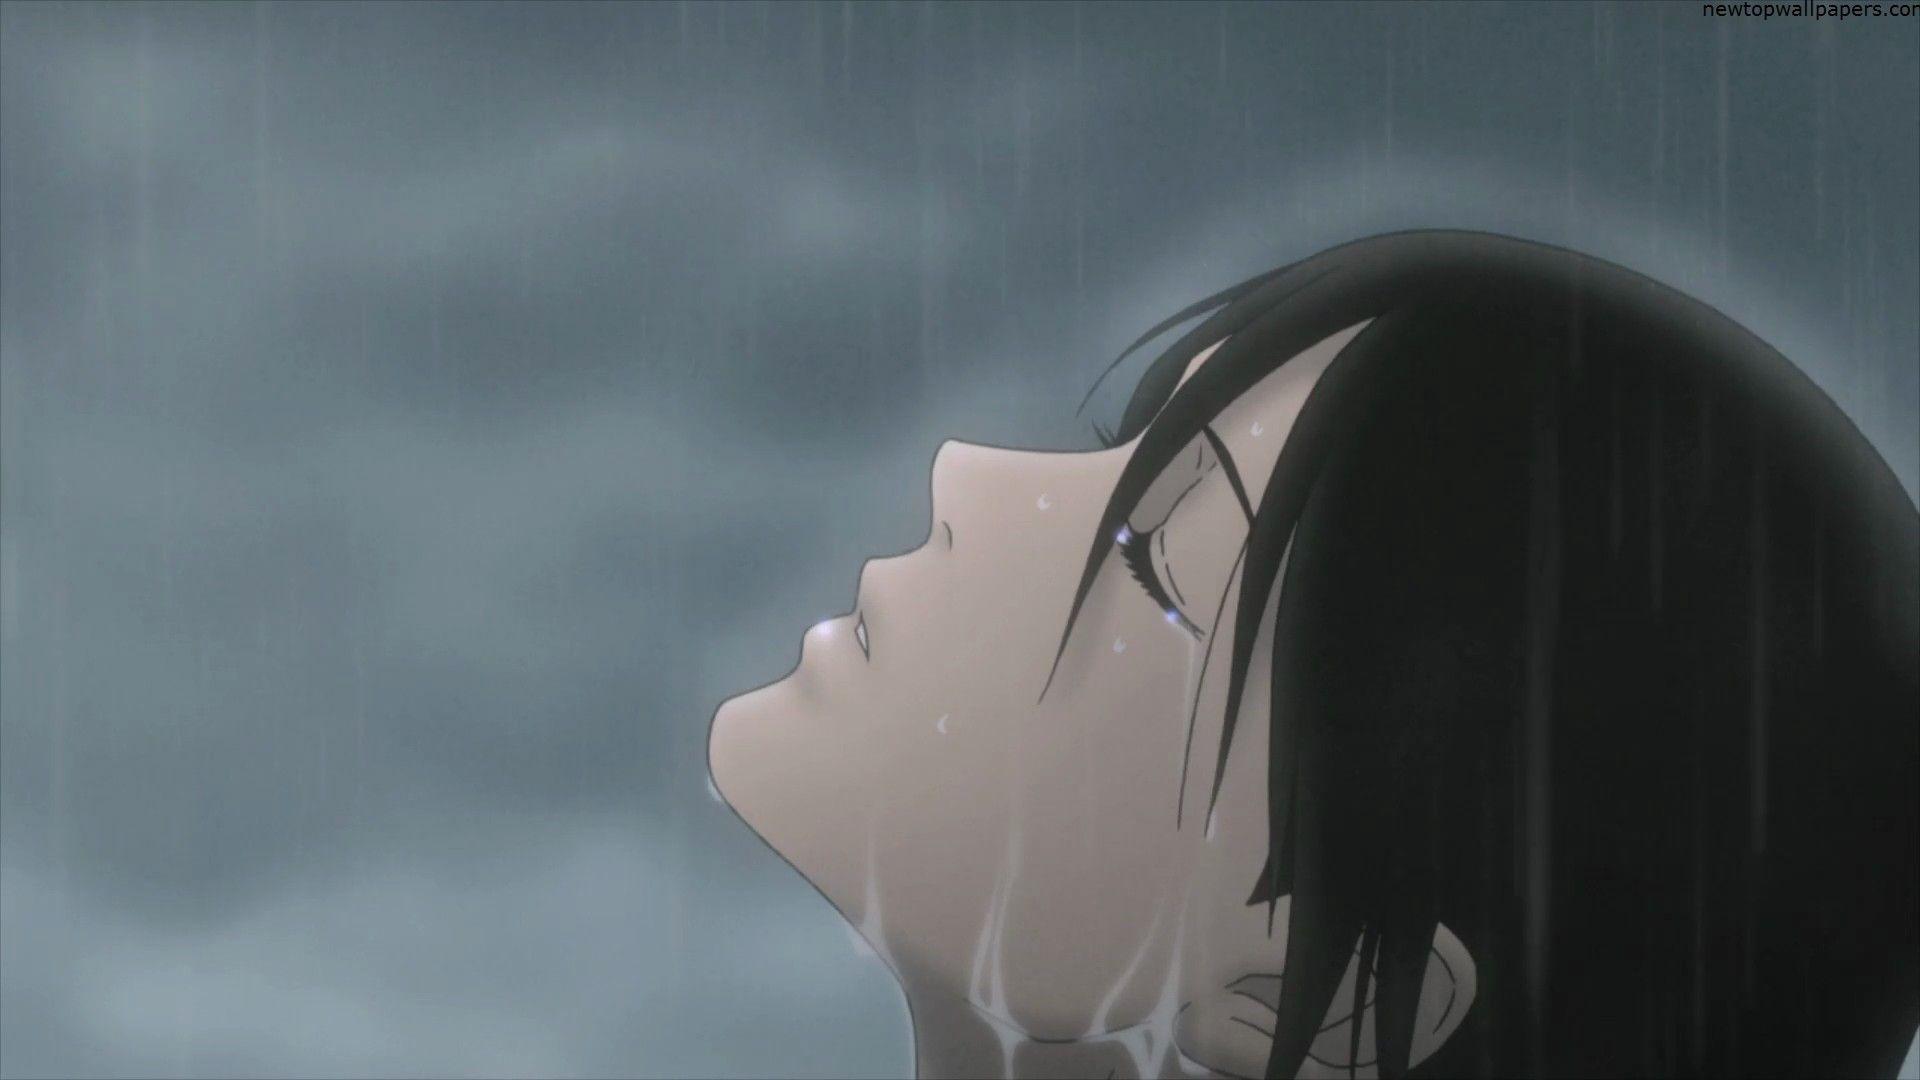 Rain Sad Anime Wallpapers - Top Free Rain Sad Anime Backgrounds